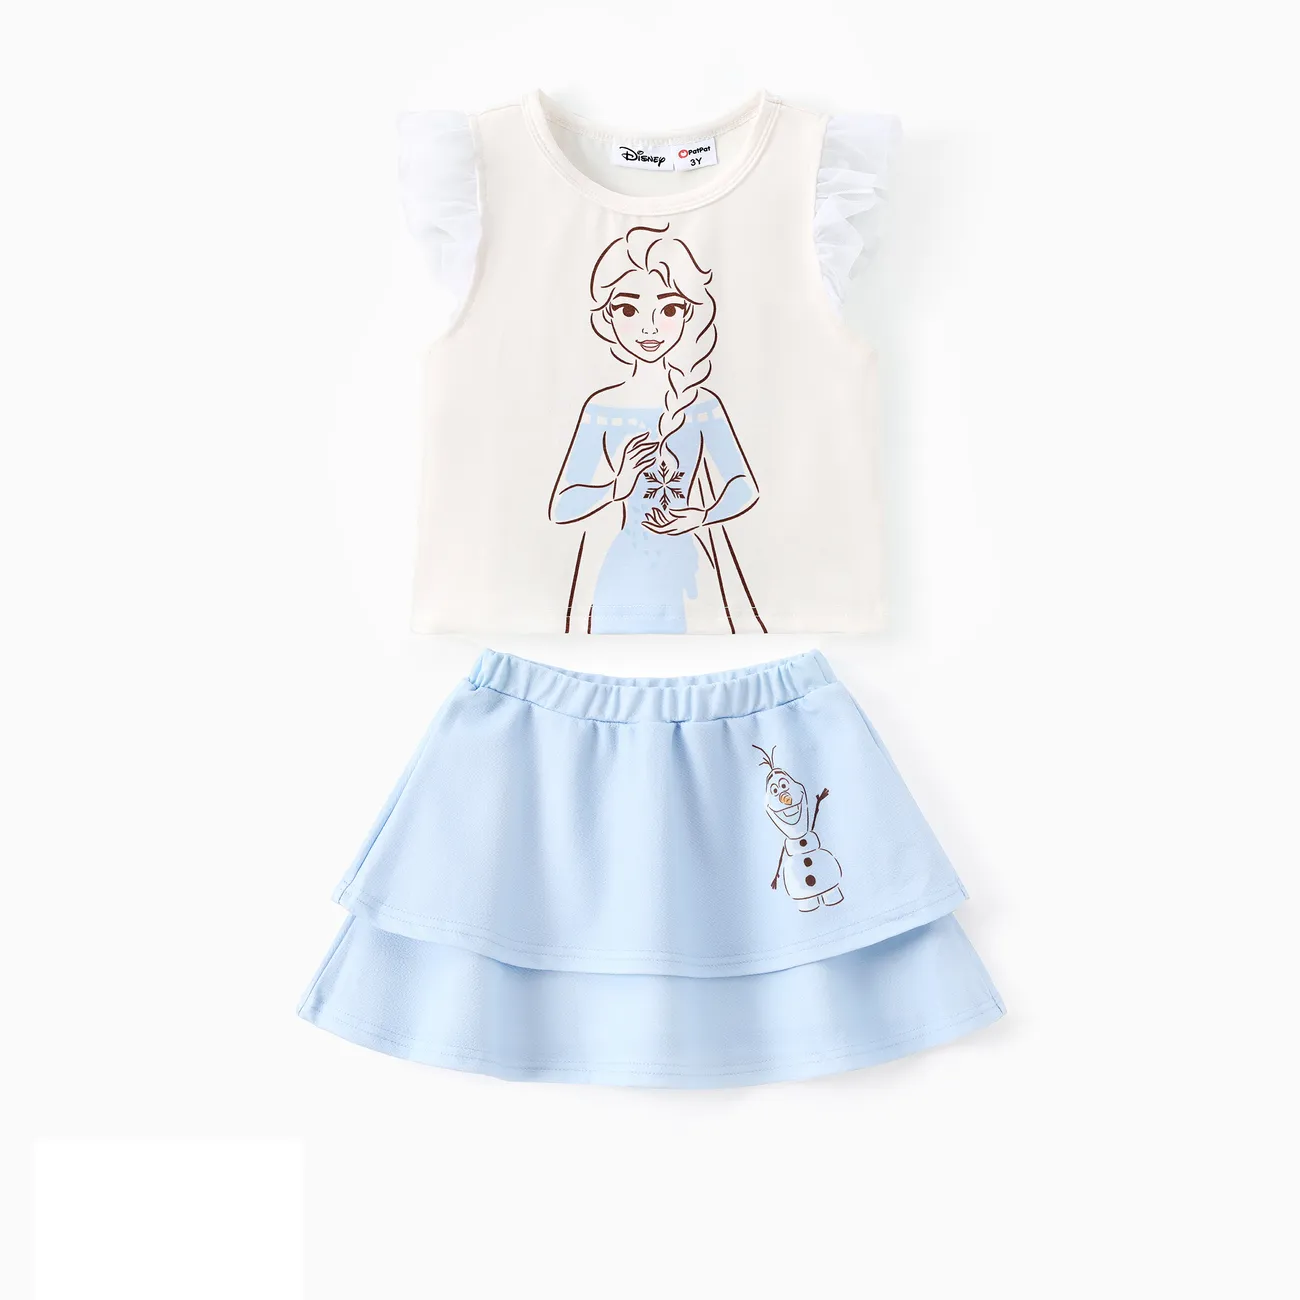 Disney Frozen 2 unidades Niño pequeño Chica Mangas con volantes Infantil conjuntos de camiseta color crema big image 1